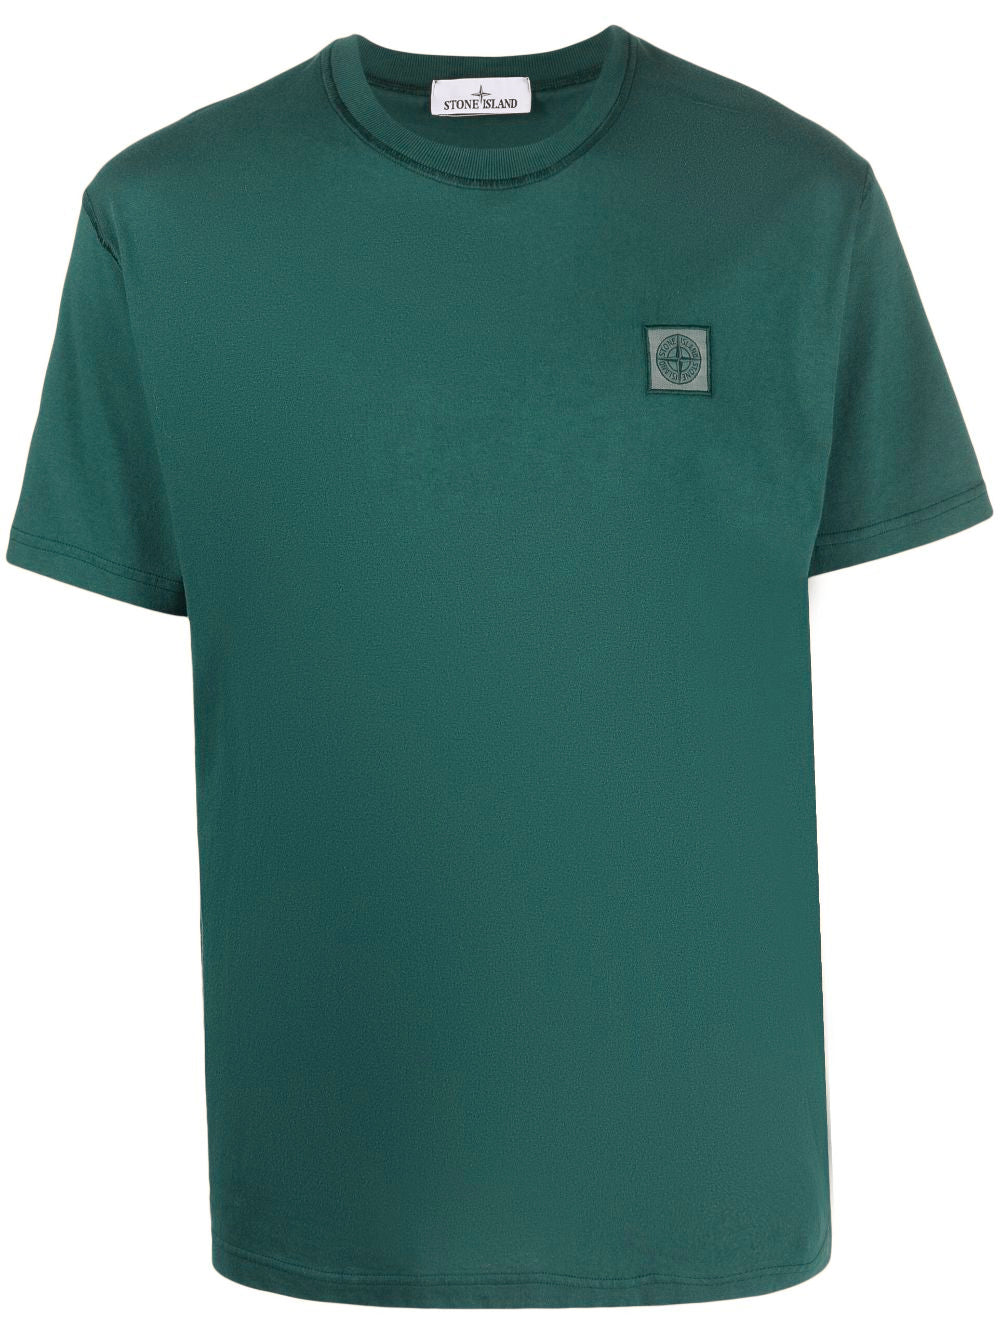 STONE ISLAND - Tee Shirt Compass dye vert fôret